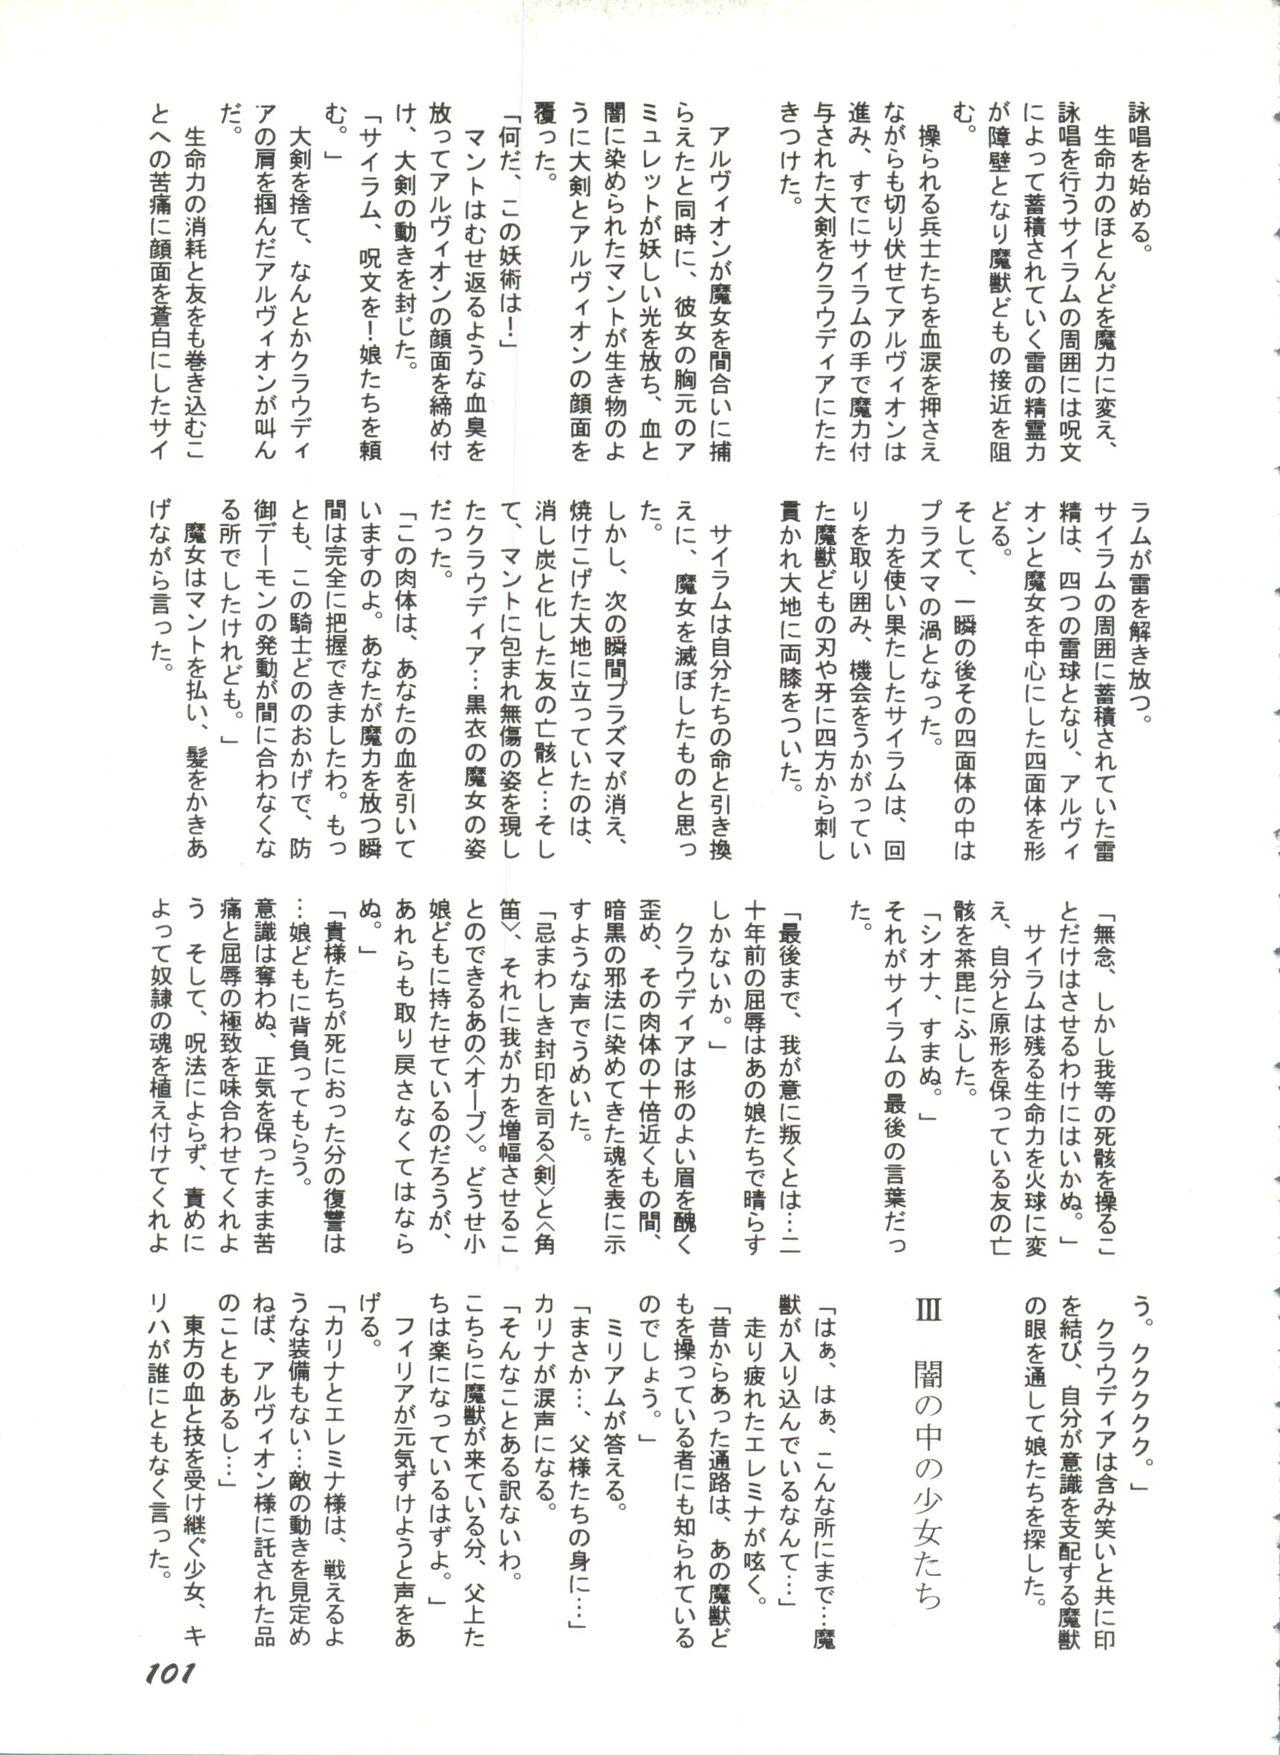 Bishoujo Doujinshi Anthology 1 102